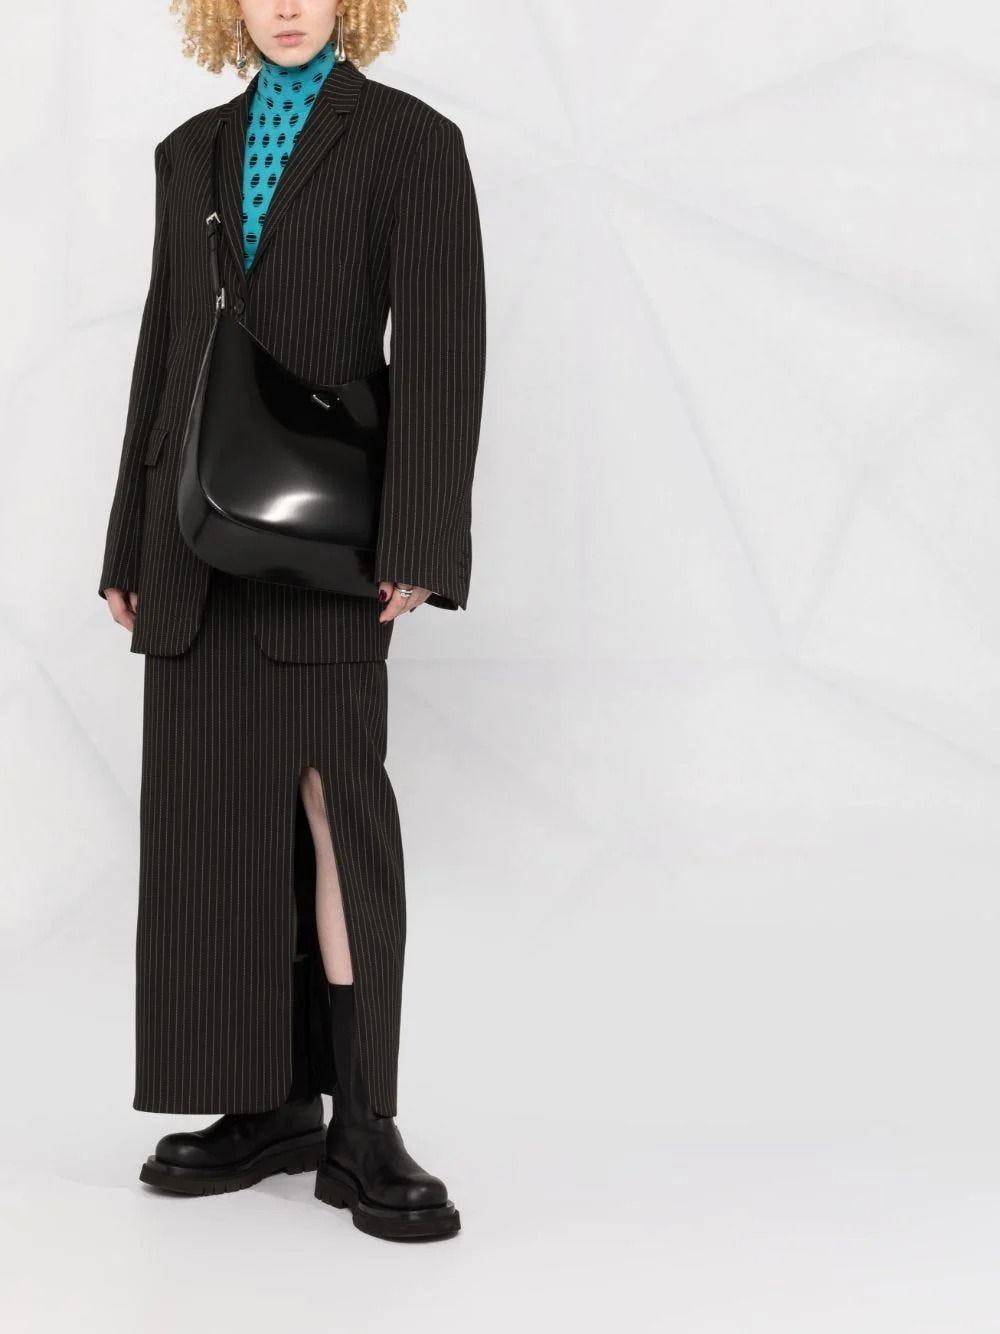 PRADA Large Cleo Brushed Leather Shoulder Bag in Black [ReSale